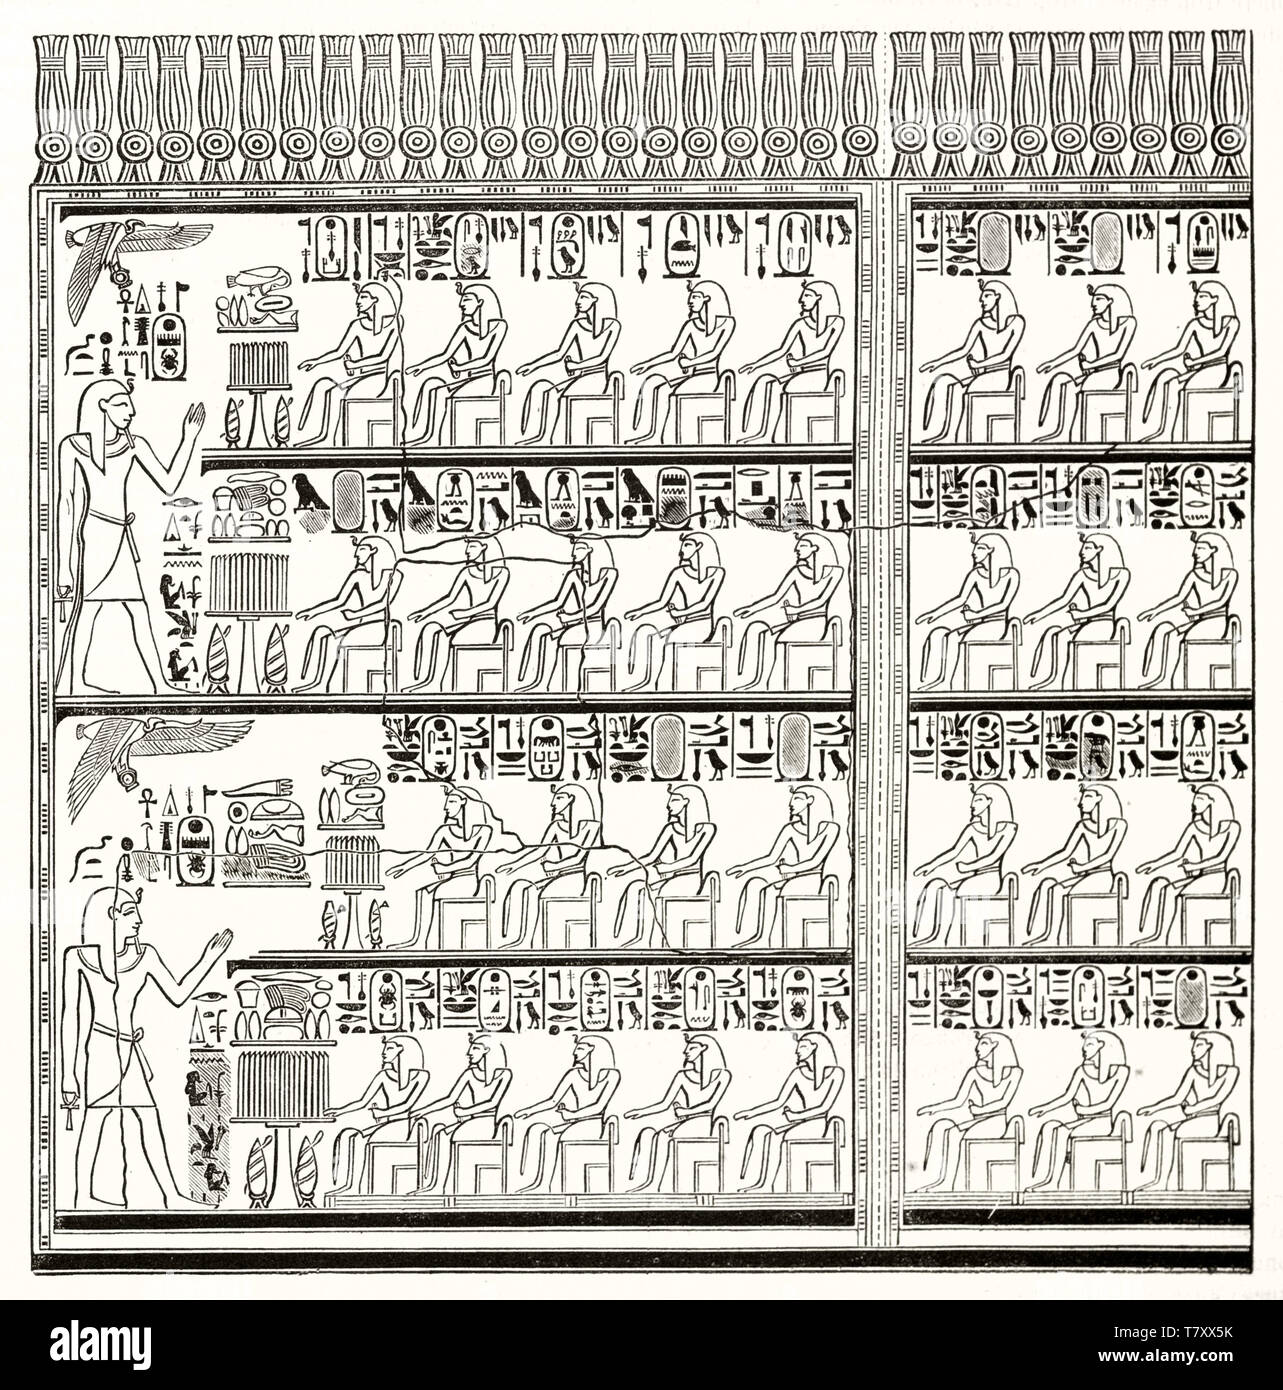 Noir et blanc antique hiéroglyphe représentant le profil Voir les pharaons égyptiens classique. La reproduction de l'ancien roi gravé de Karnak. Par Prisse publ. sur Magasin pittoresque Paris 1848 Banque D'Images